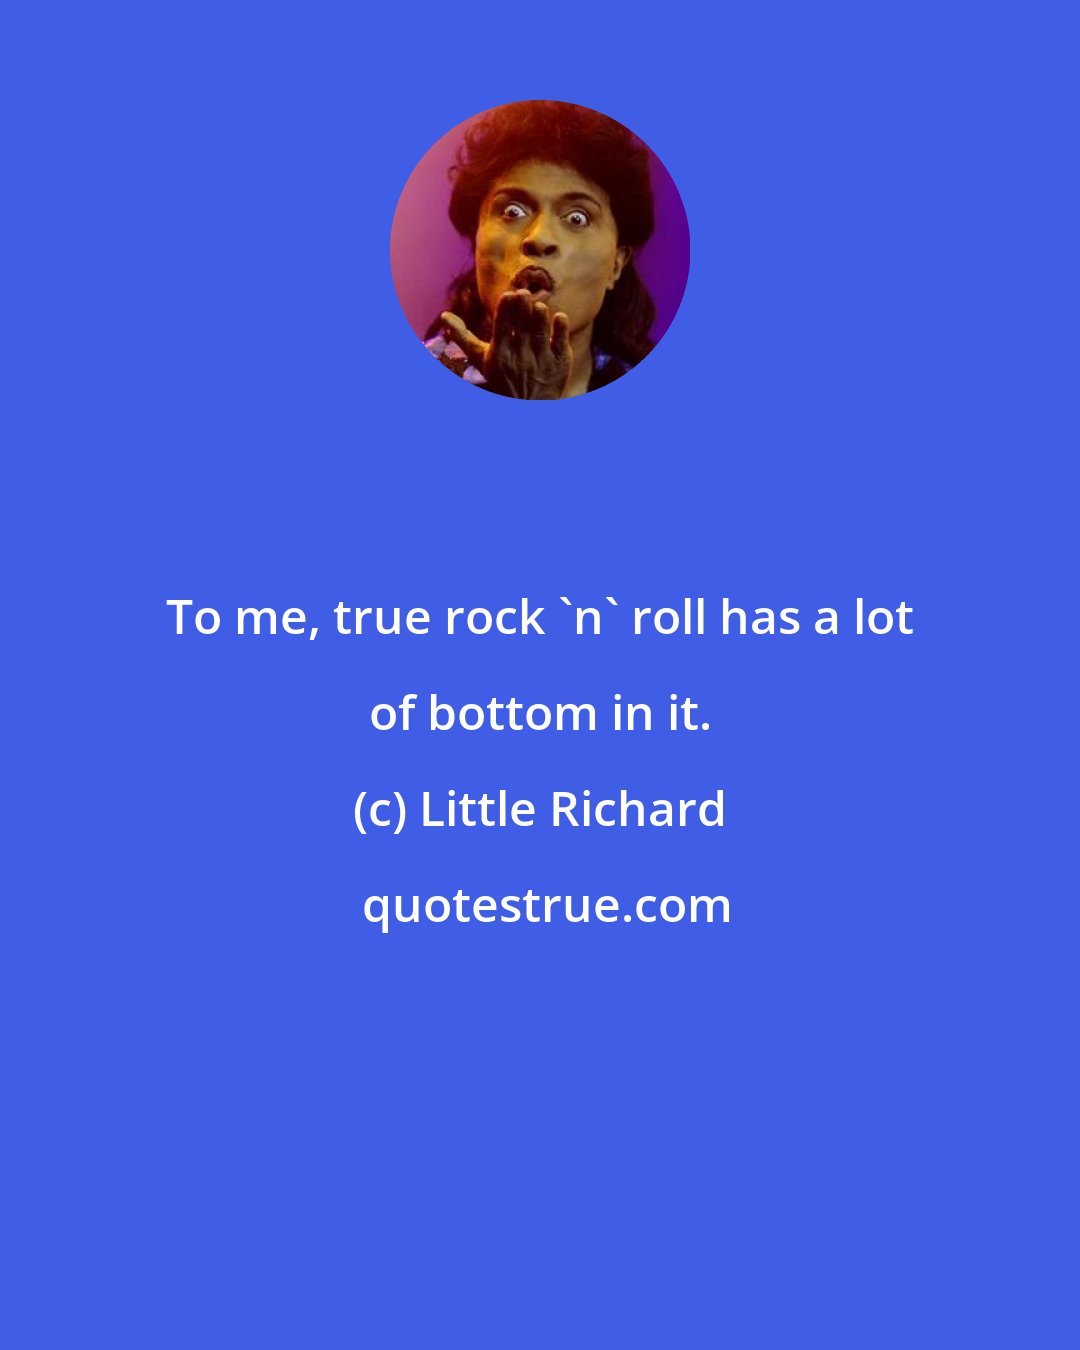 Little Richard: To me, true rock 'n' roll has a lot of bottom in it.